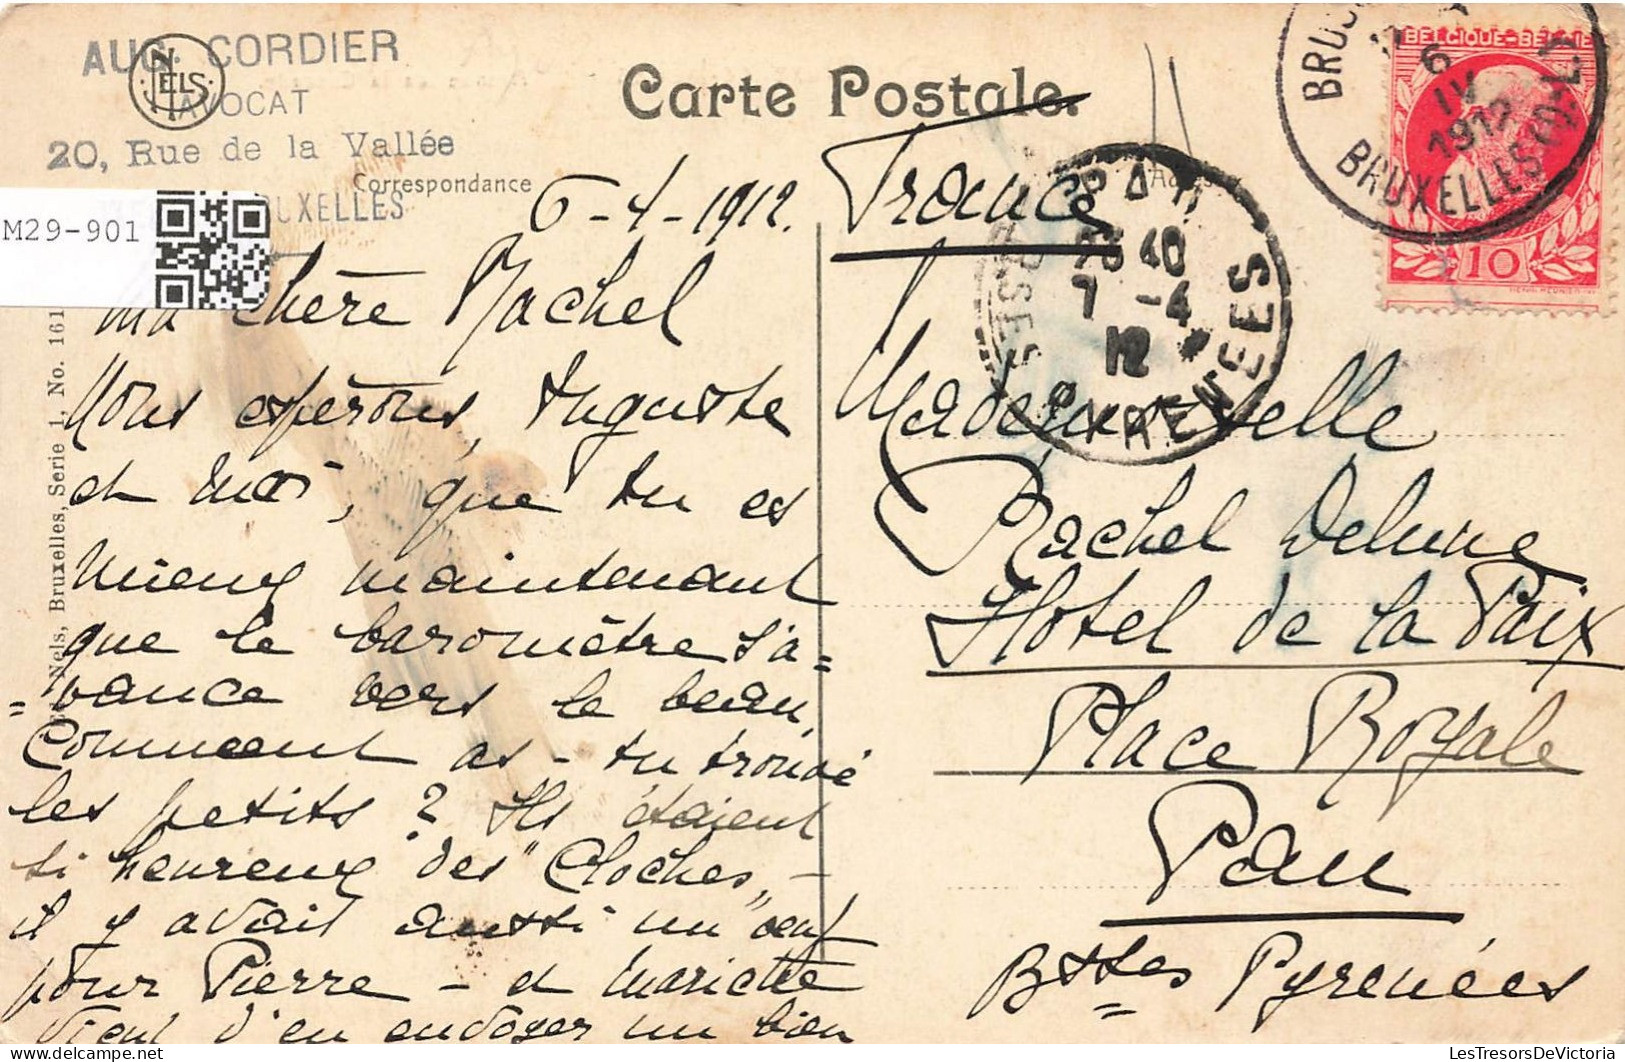 BELGIQUE - Bruxelles - Ixelles - Avenue De La Cascade - Carte Postale Ancienne - Elsene - Ixelles